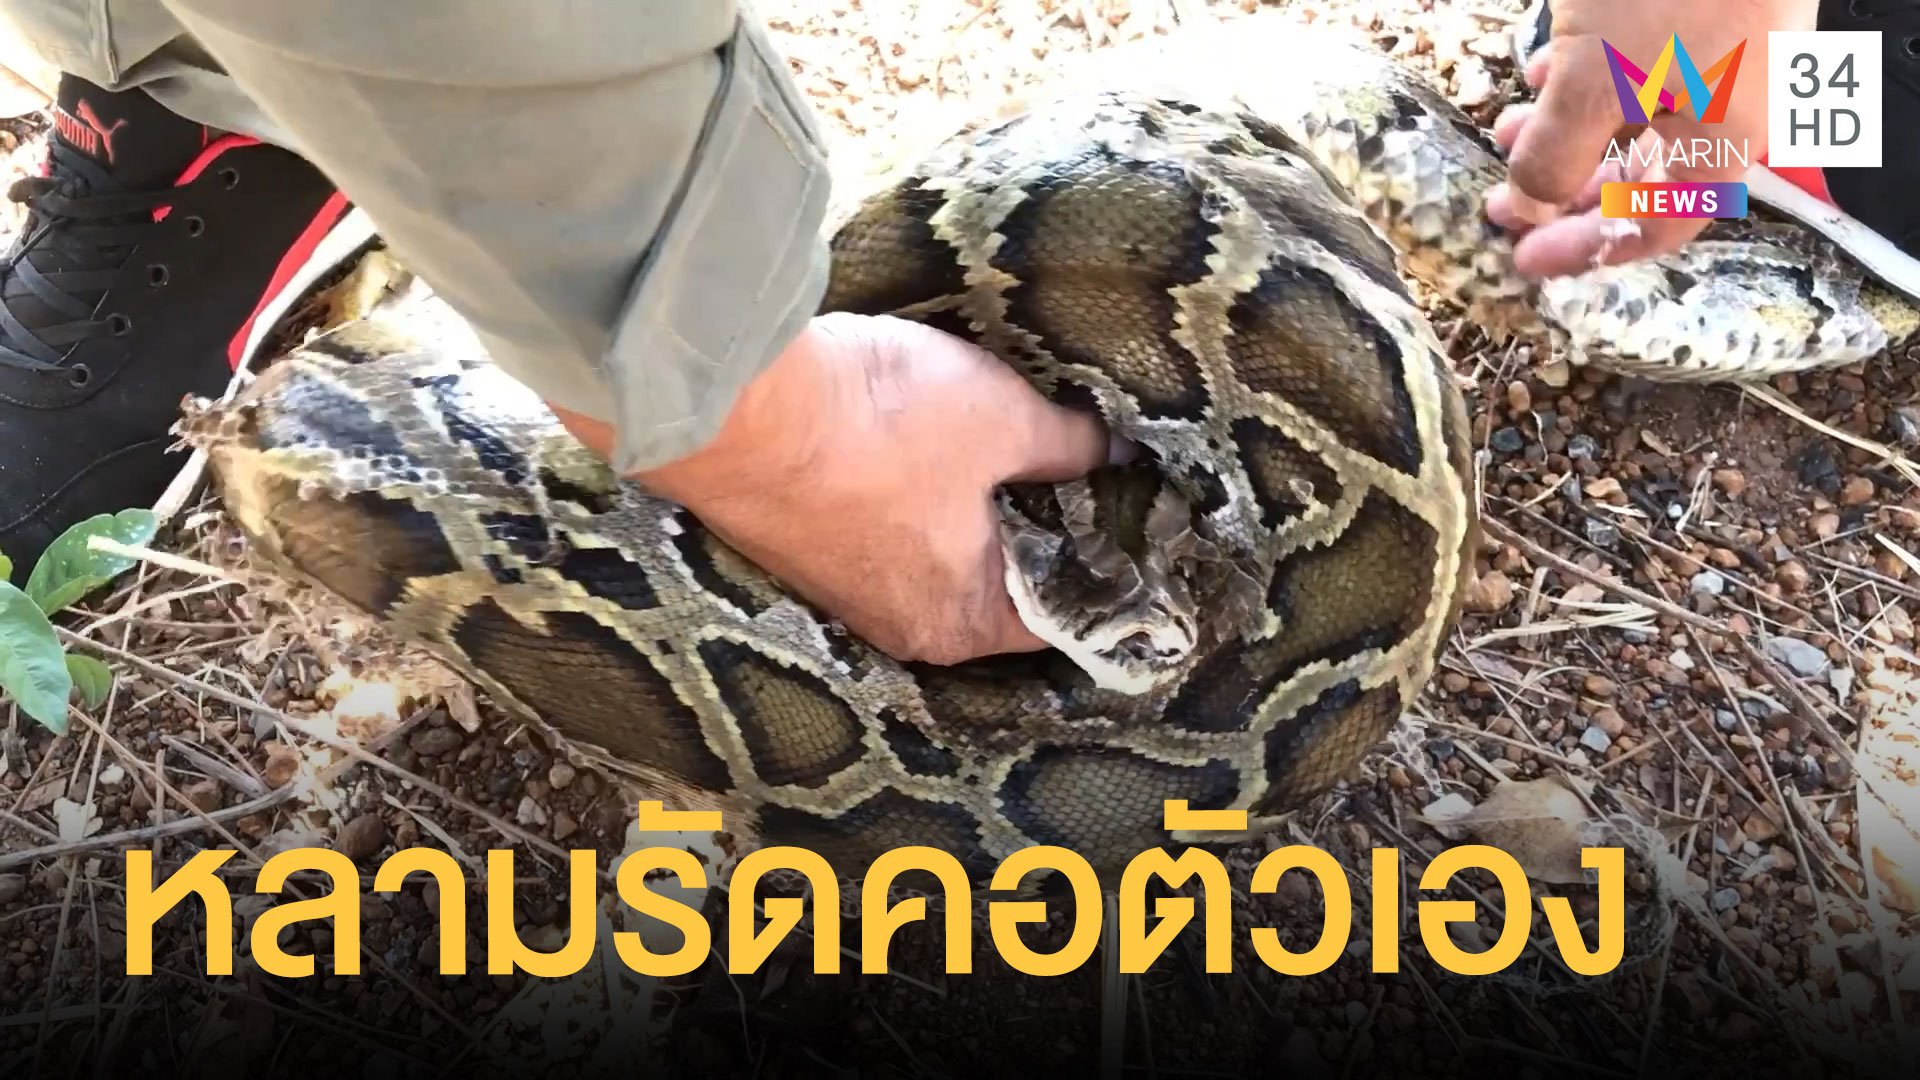 งูหลามรัดตัวเองคอแทบหัก จะช่วยสู้กู้ภัยสุดฤทธิ์ | ข่าวอรุณอมรินทร์ | 8 ก.พ. 65 | AMARIN TVHD34